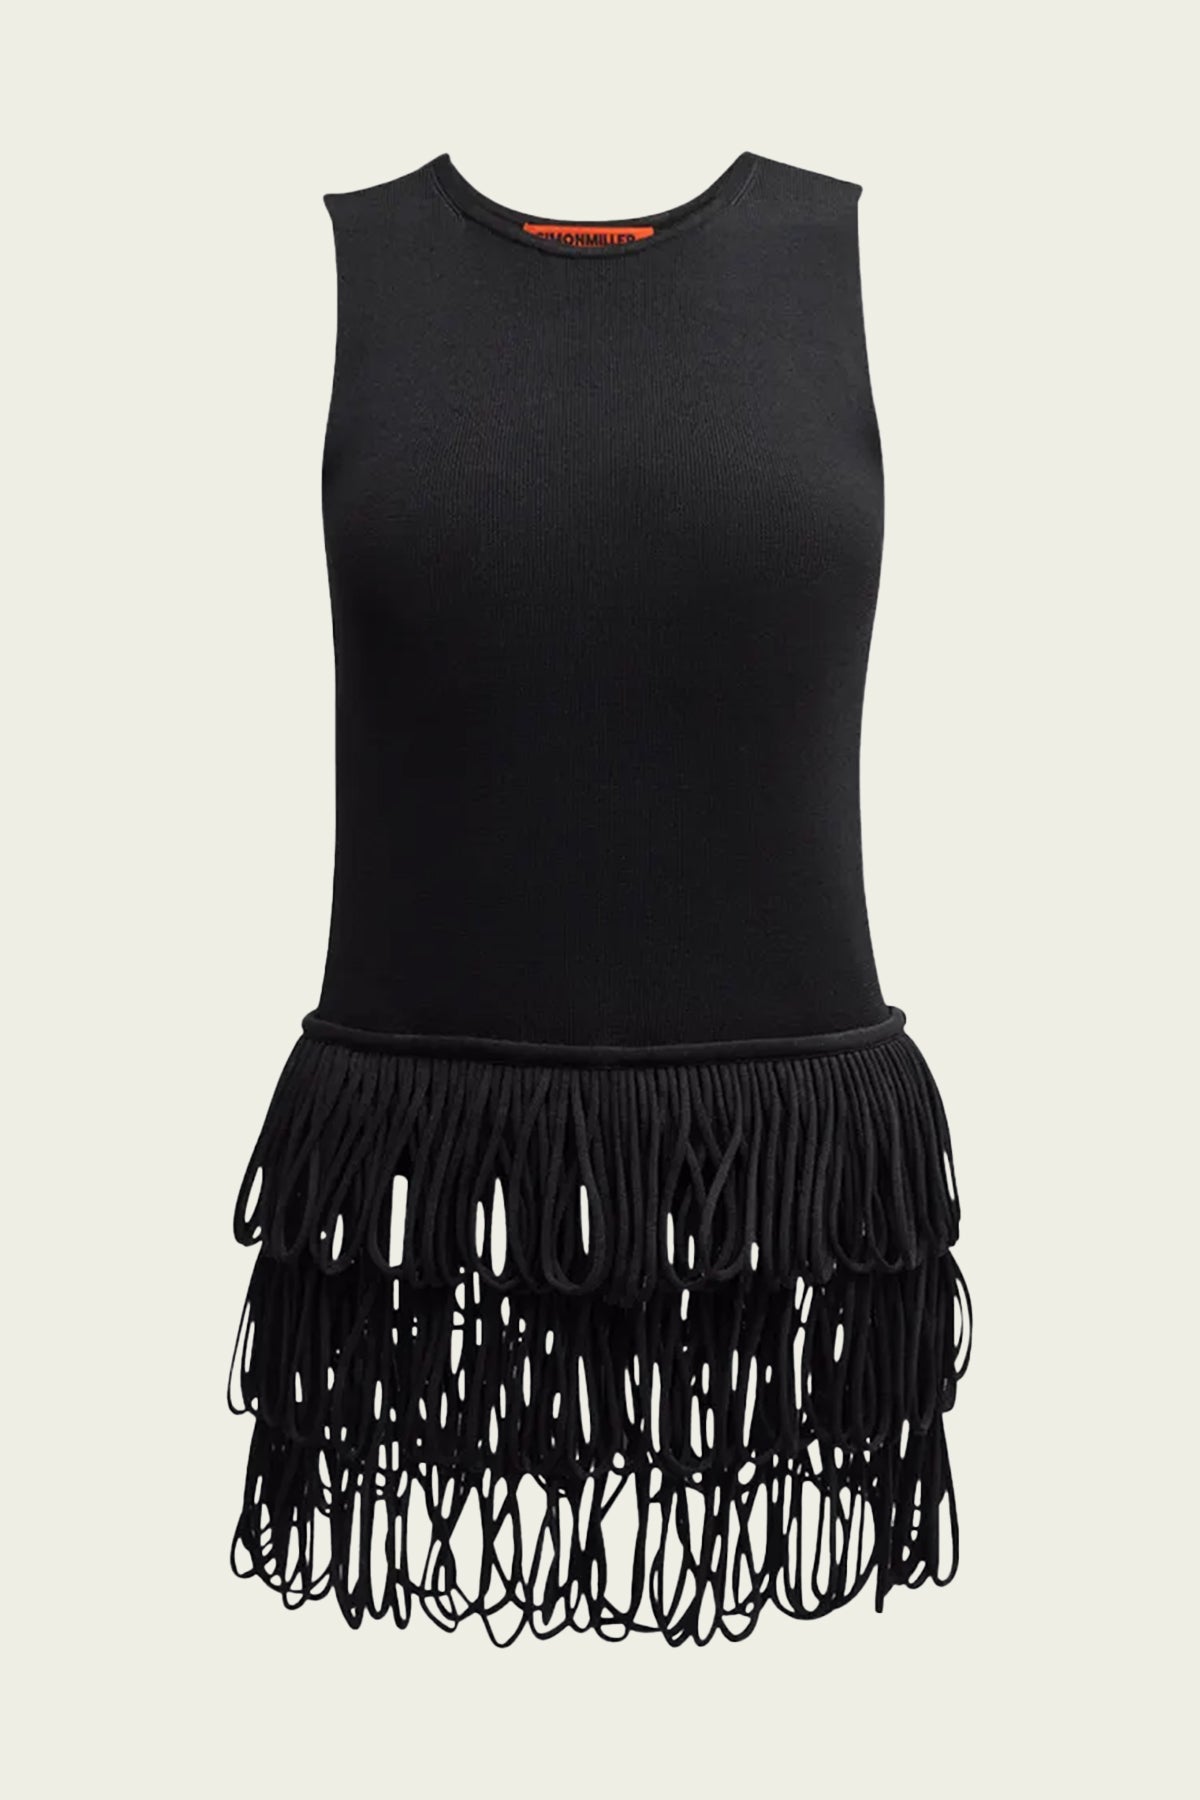 Hartland Knit Top in Black - shop-olivia.com